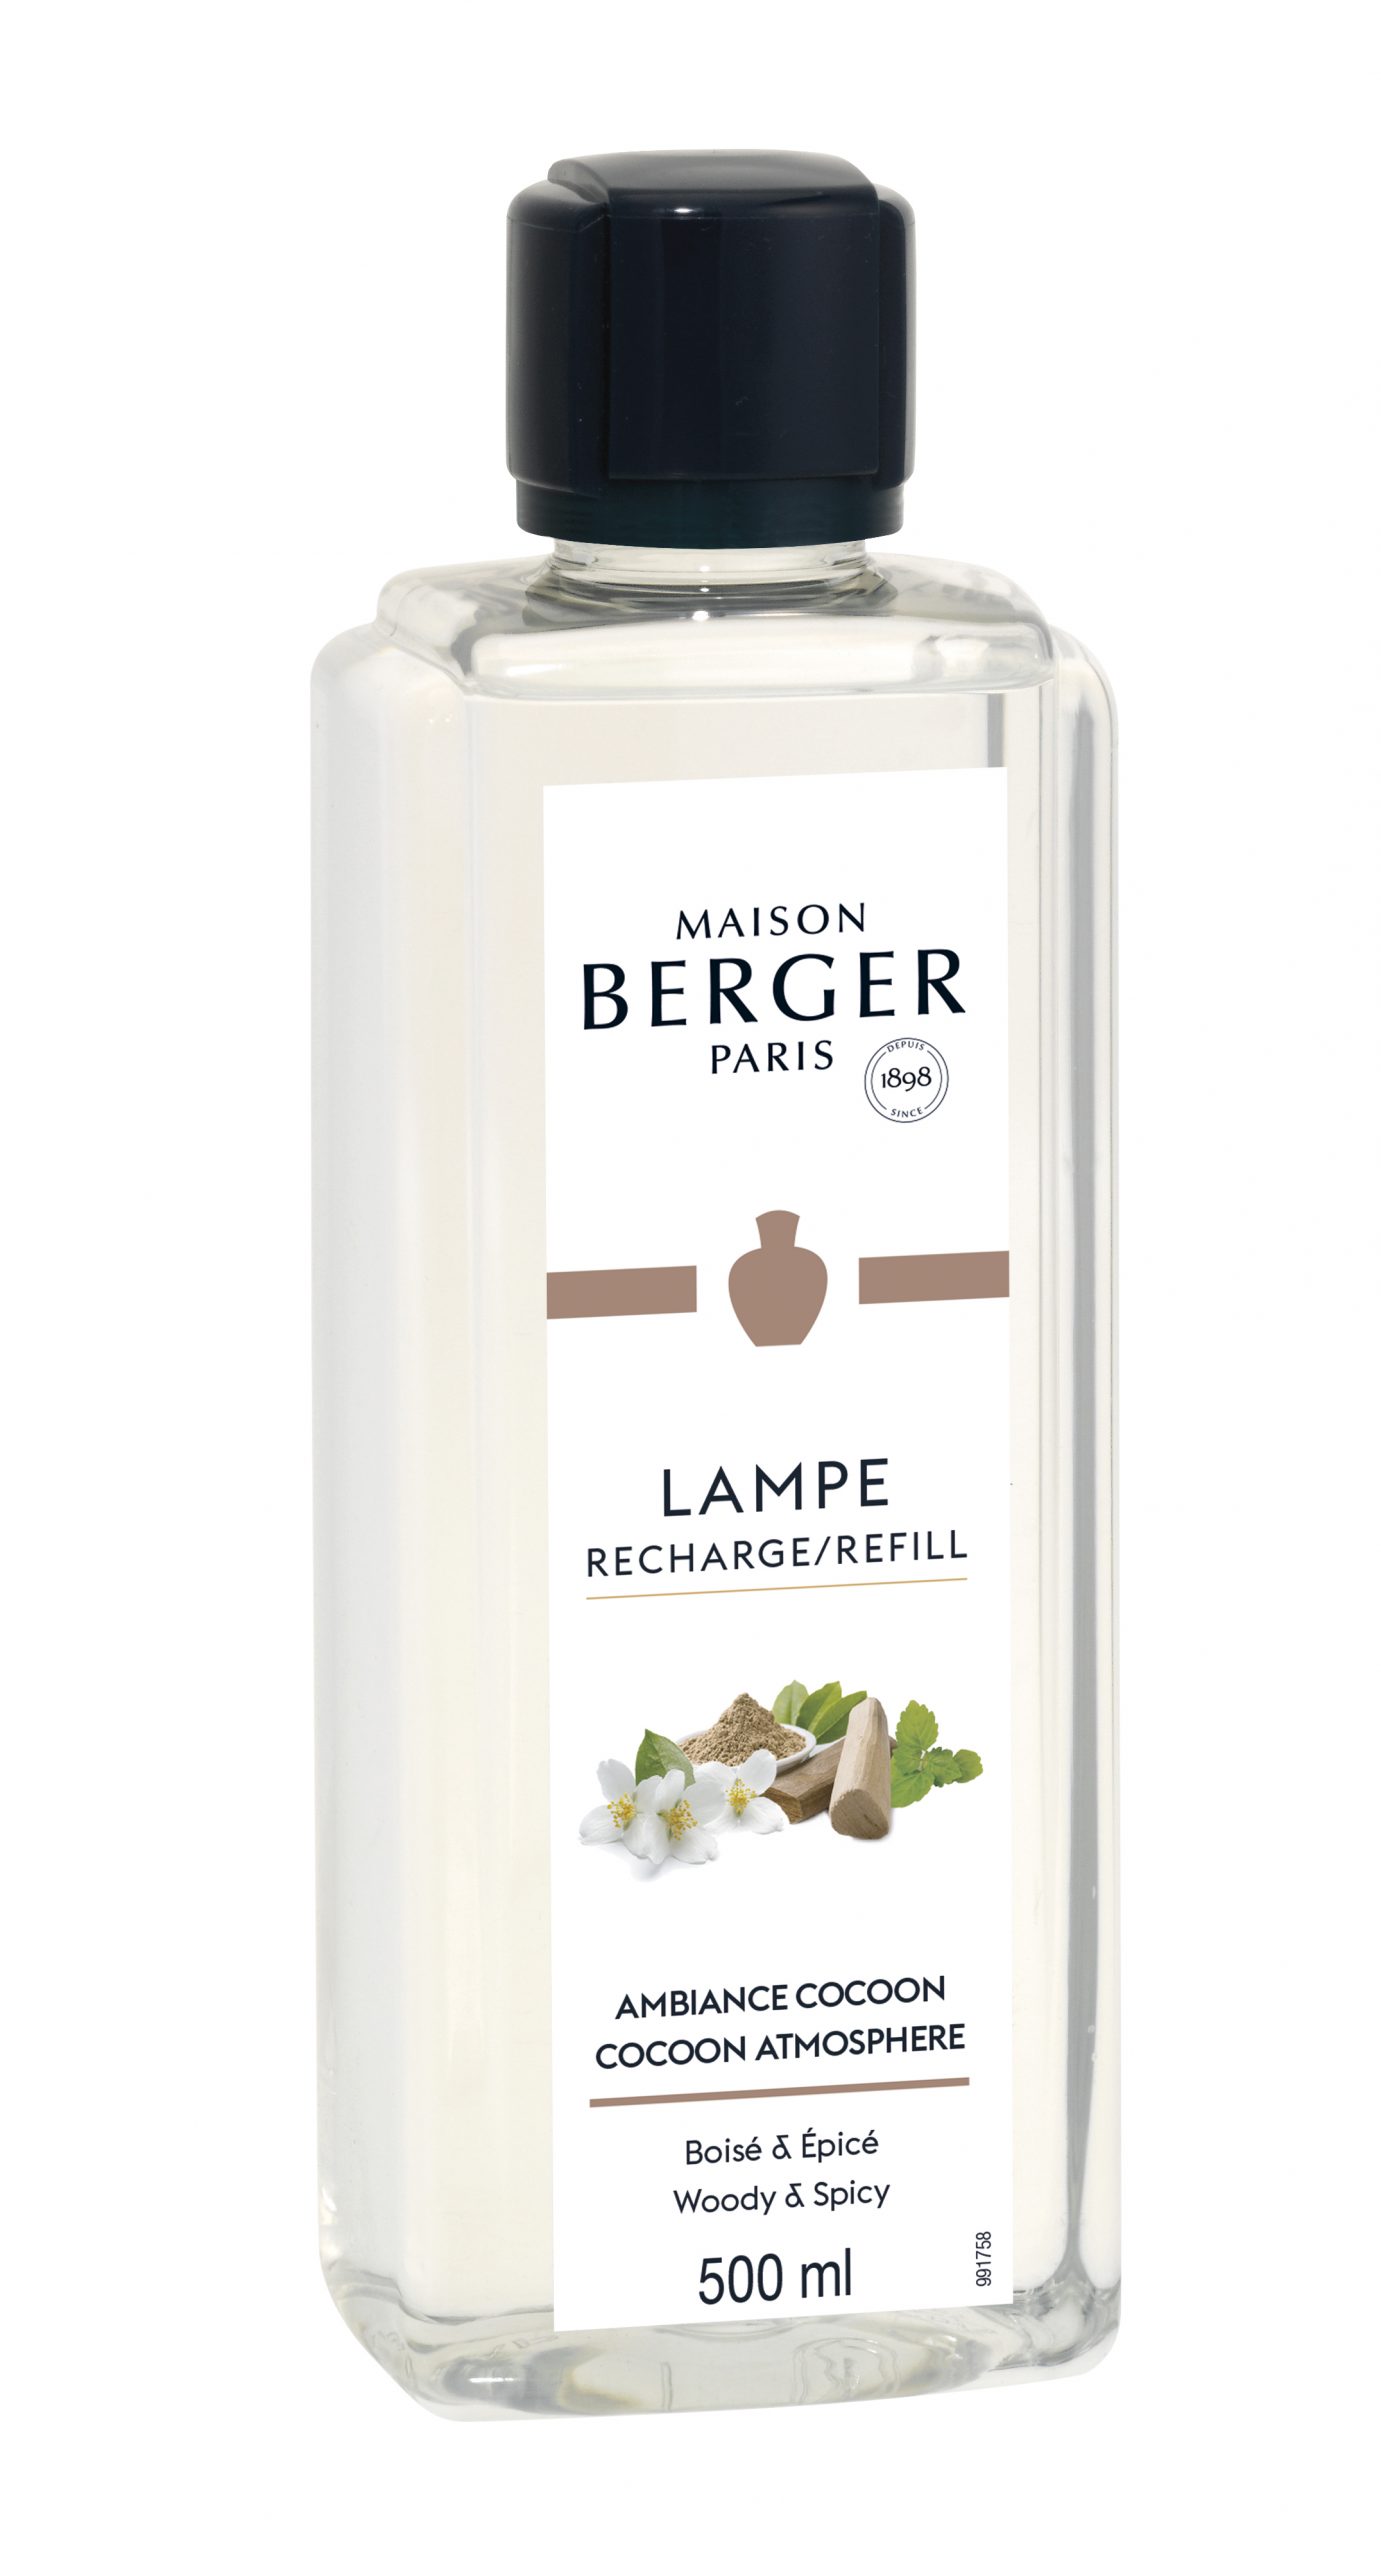 Maison Berger Paris - parfum - Ambiance Cocoon- 500 ml